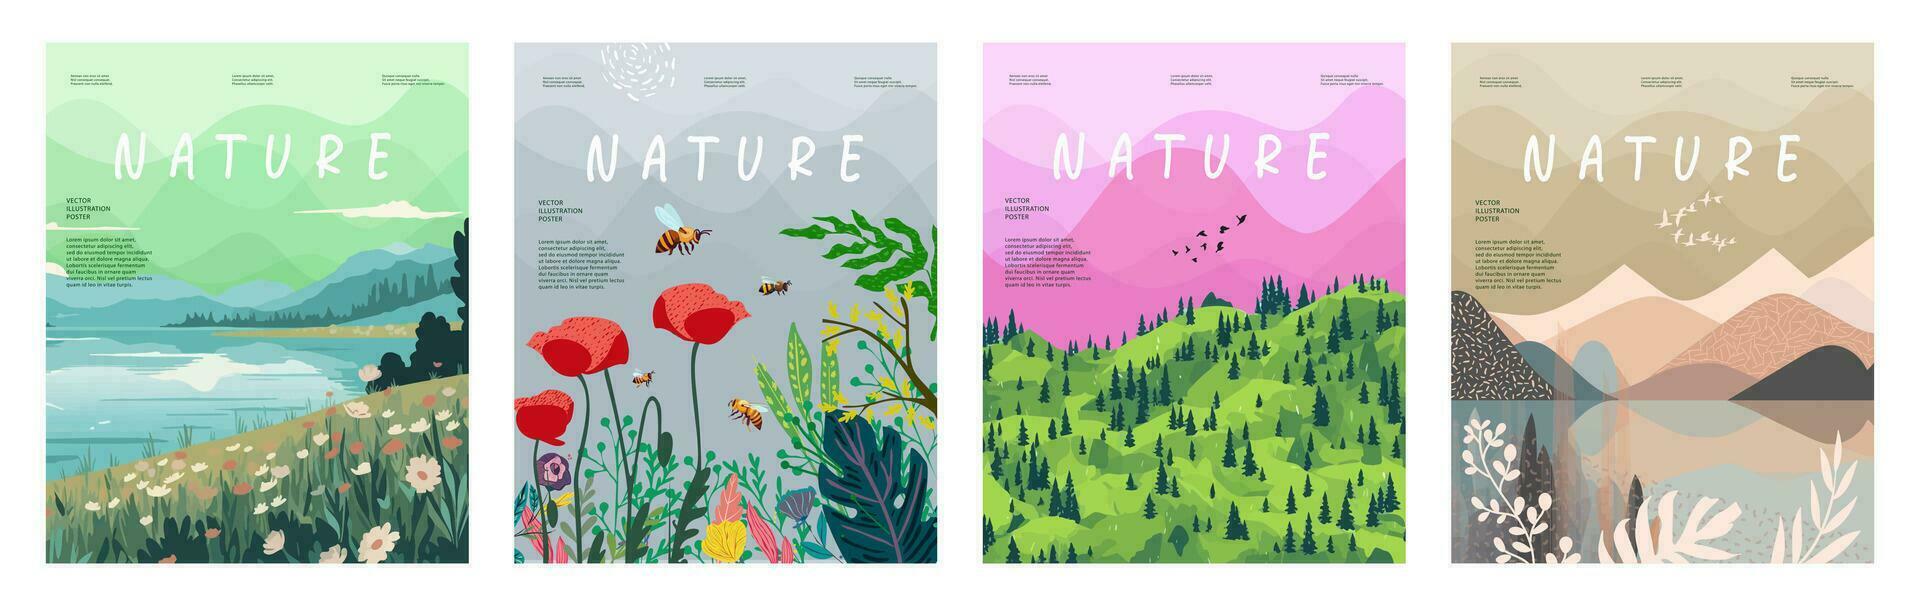 naturaleza y paisaje, contemporáneo artístico póster. vector